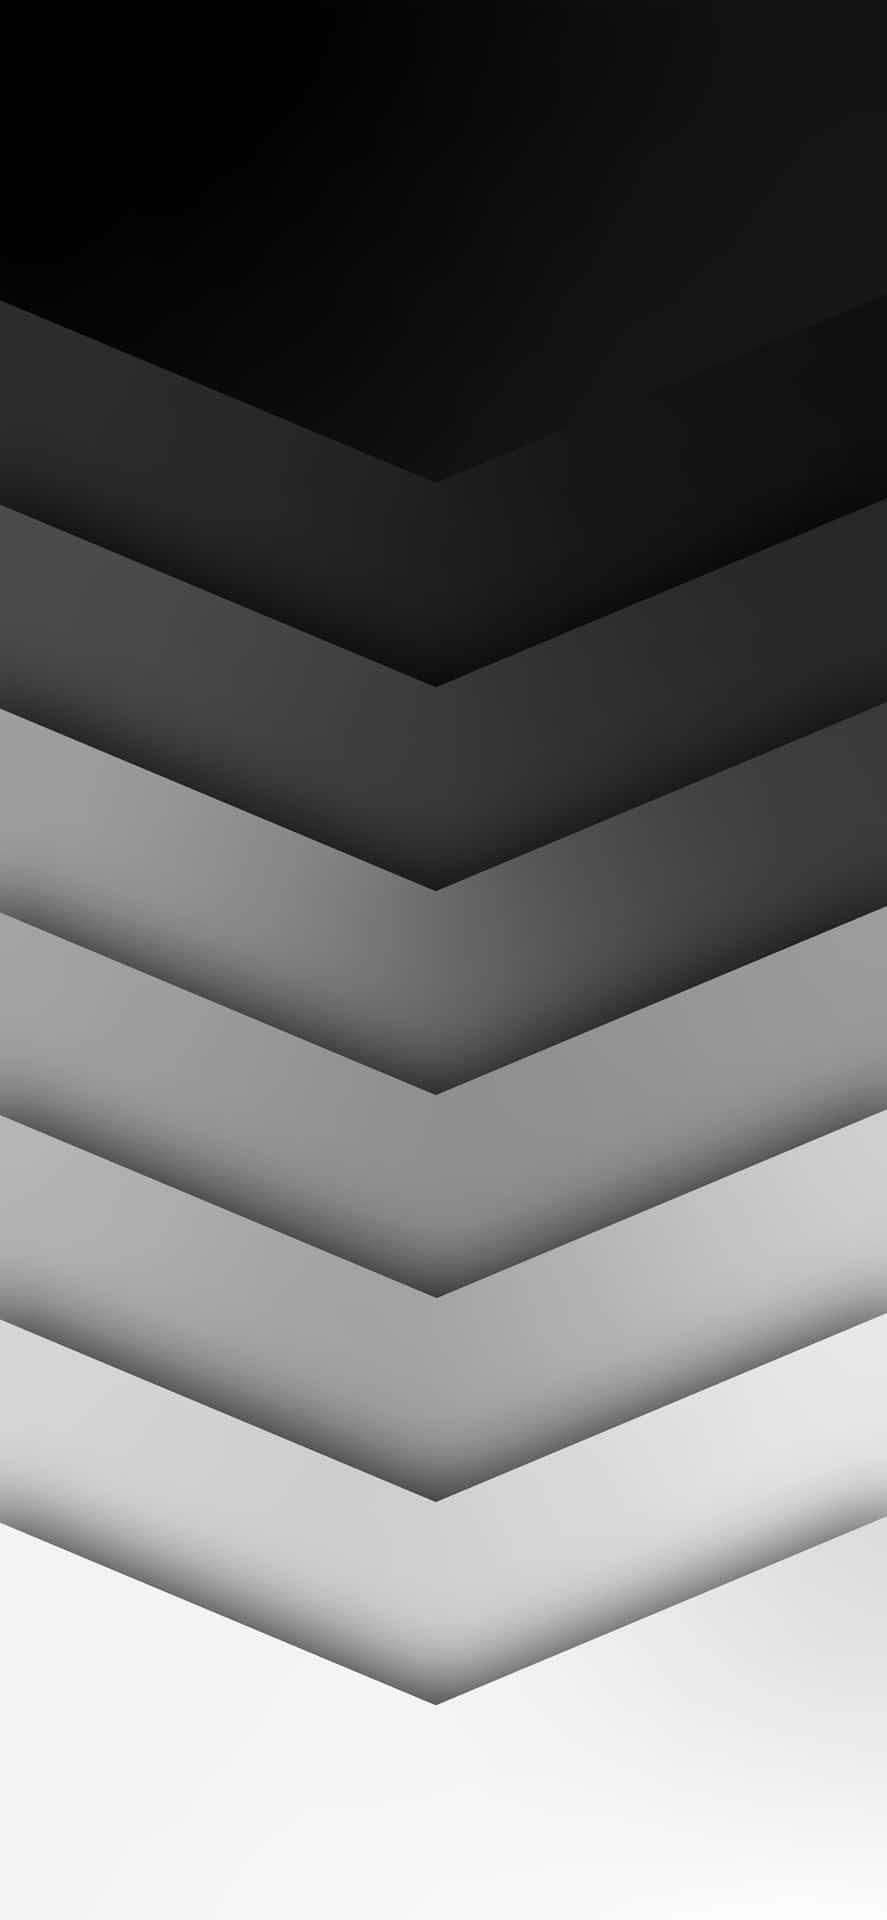 Fondoabstracto En Blanco Y Negro Con Un Patrón De Zigzag. Fondo de pantalla